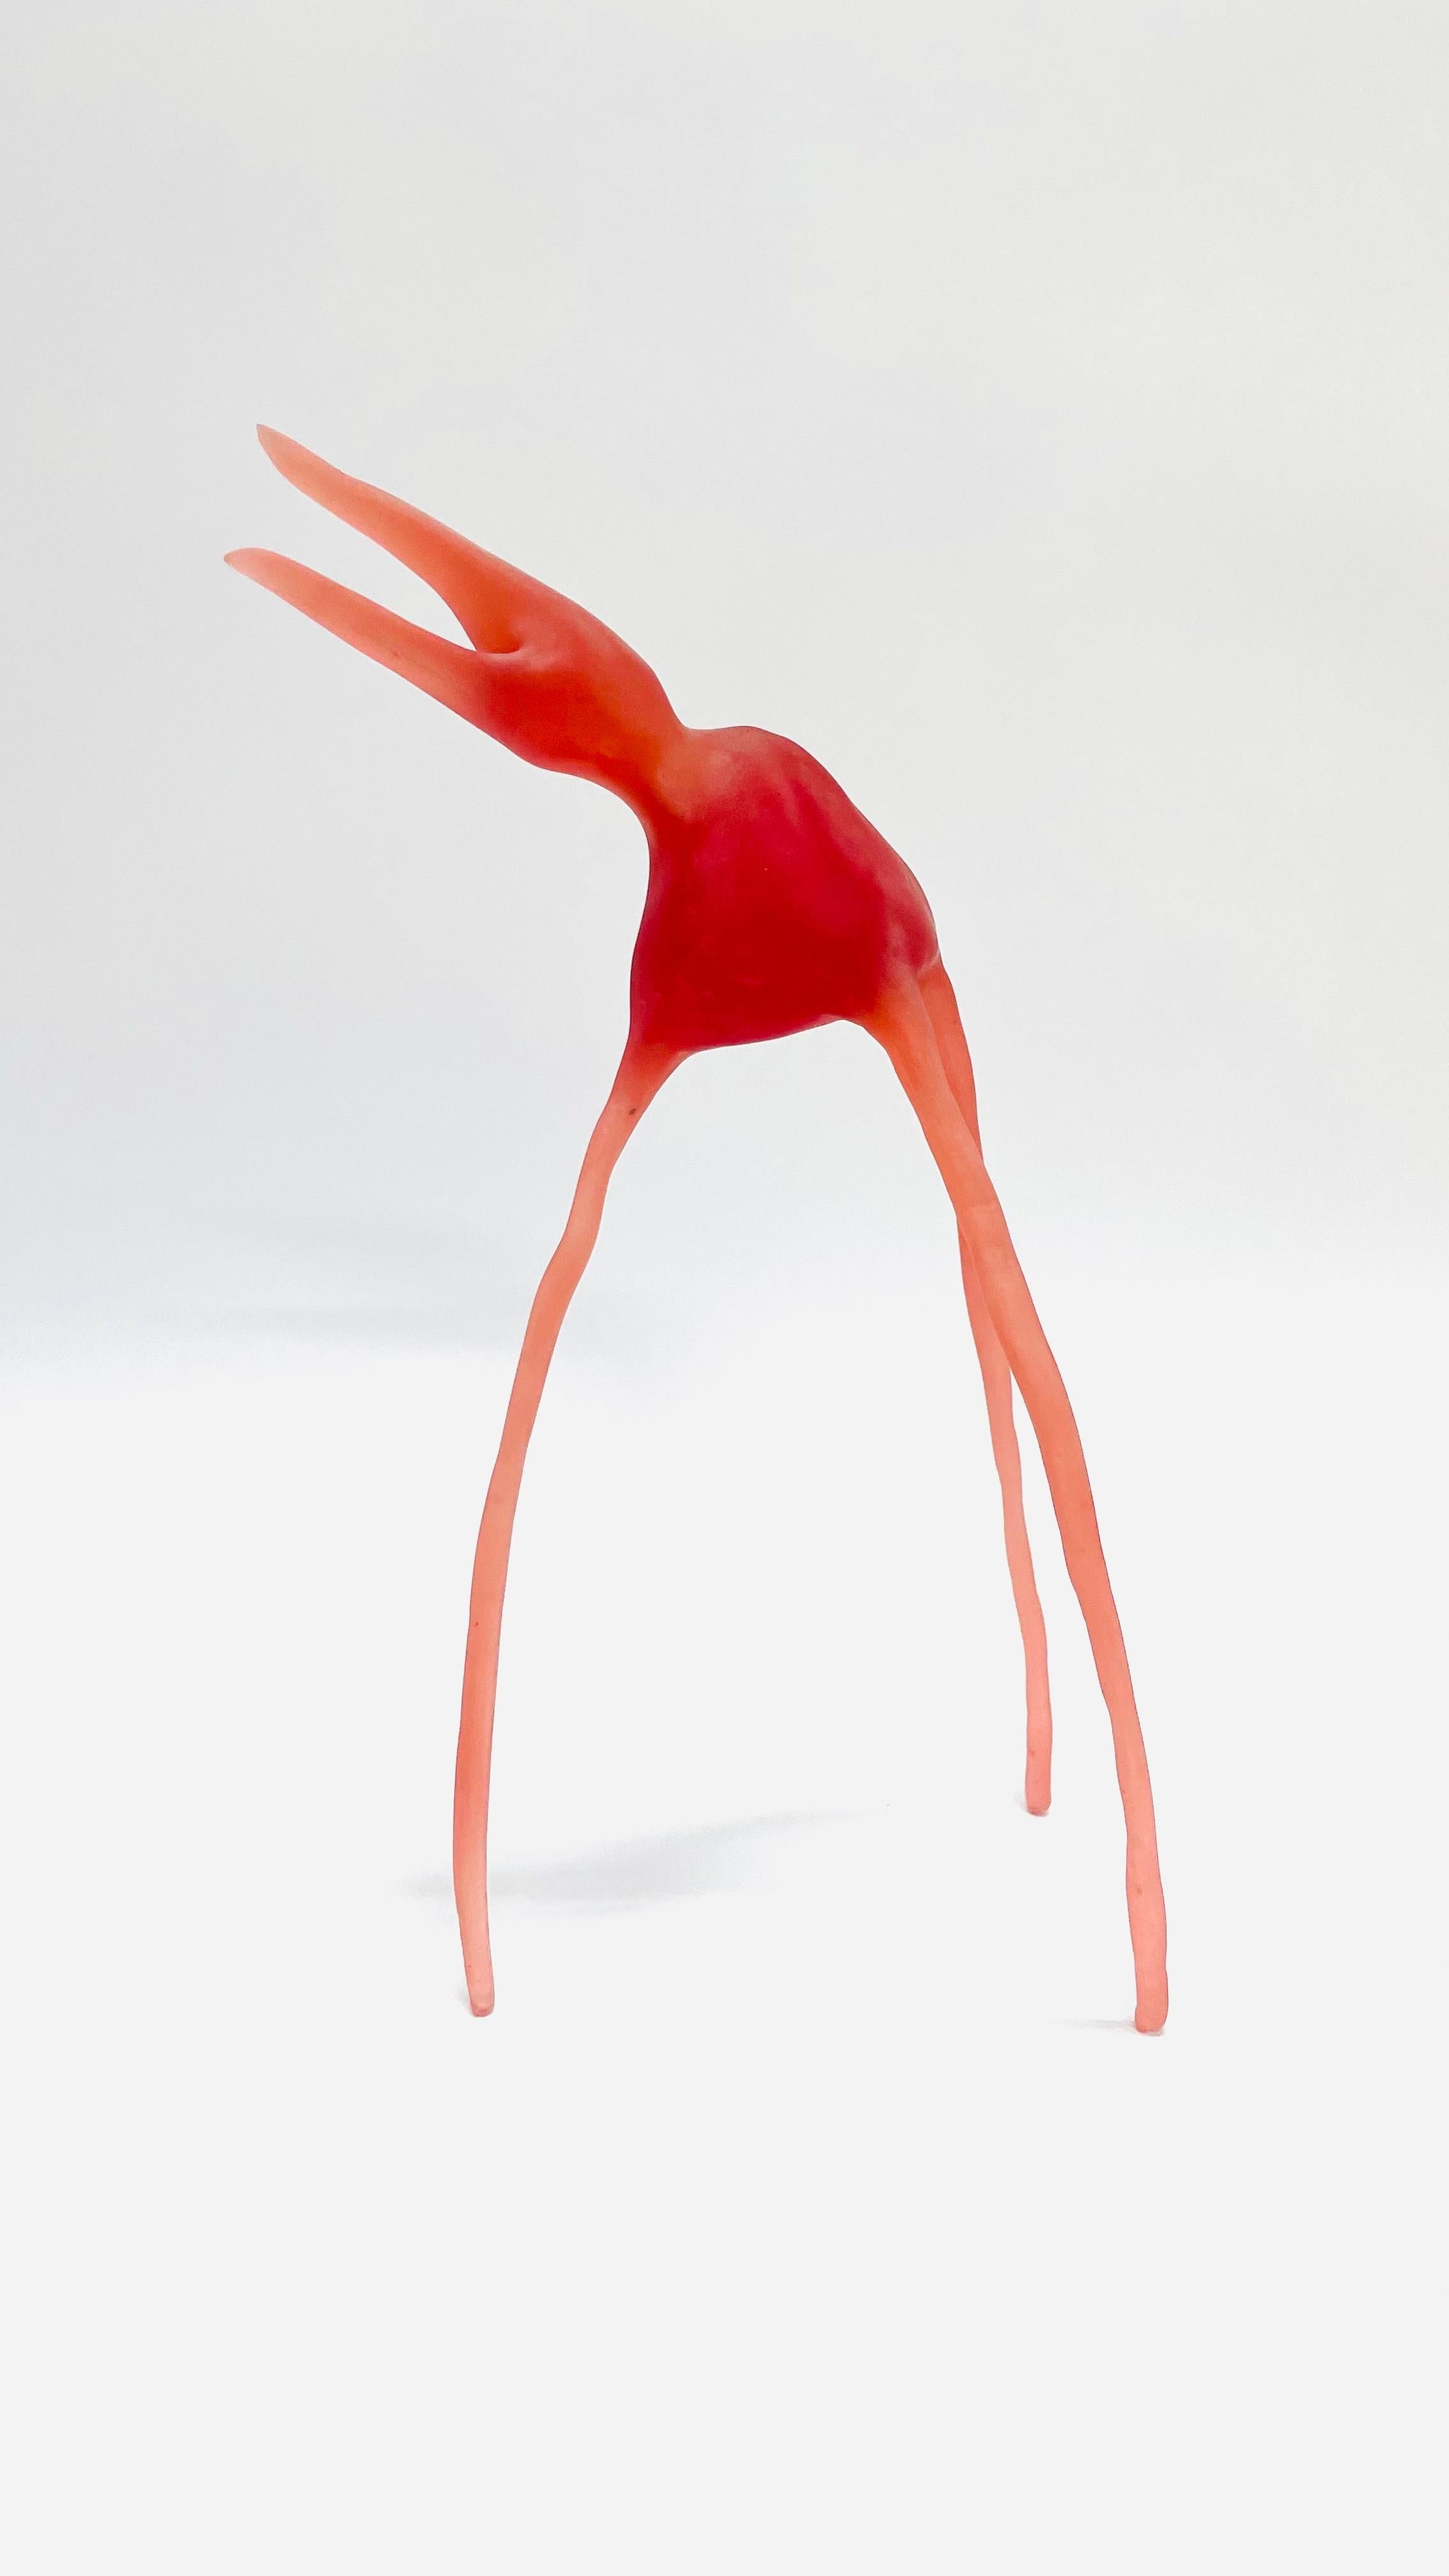 Alejandra España  Figurative Sculpture - "Ave del paraíso" figurative animal sculpture, translucid resin, red